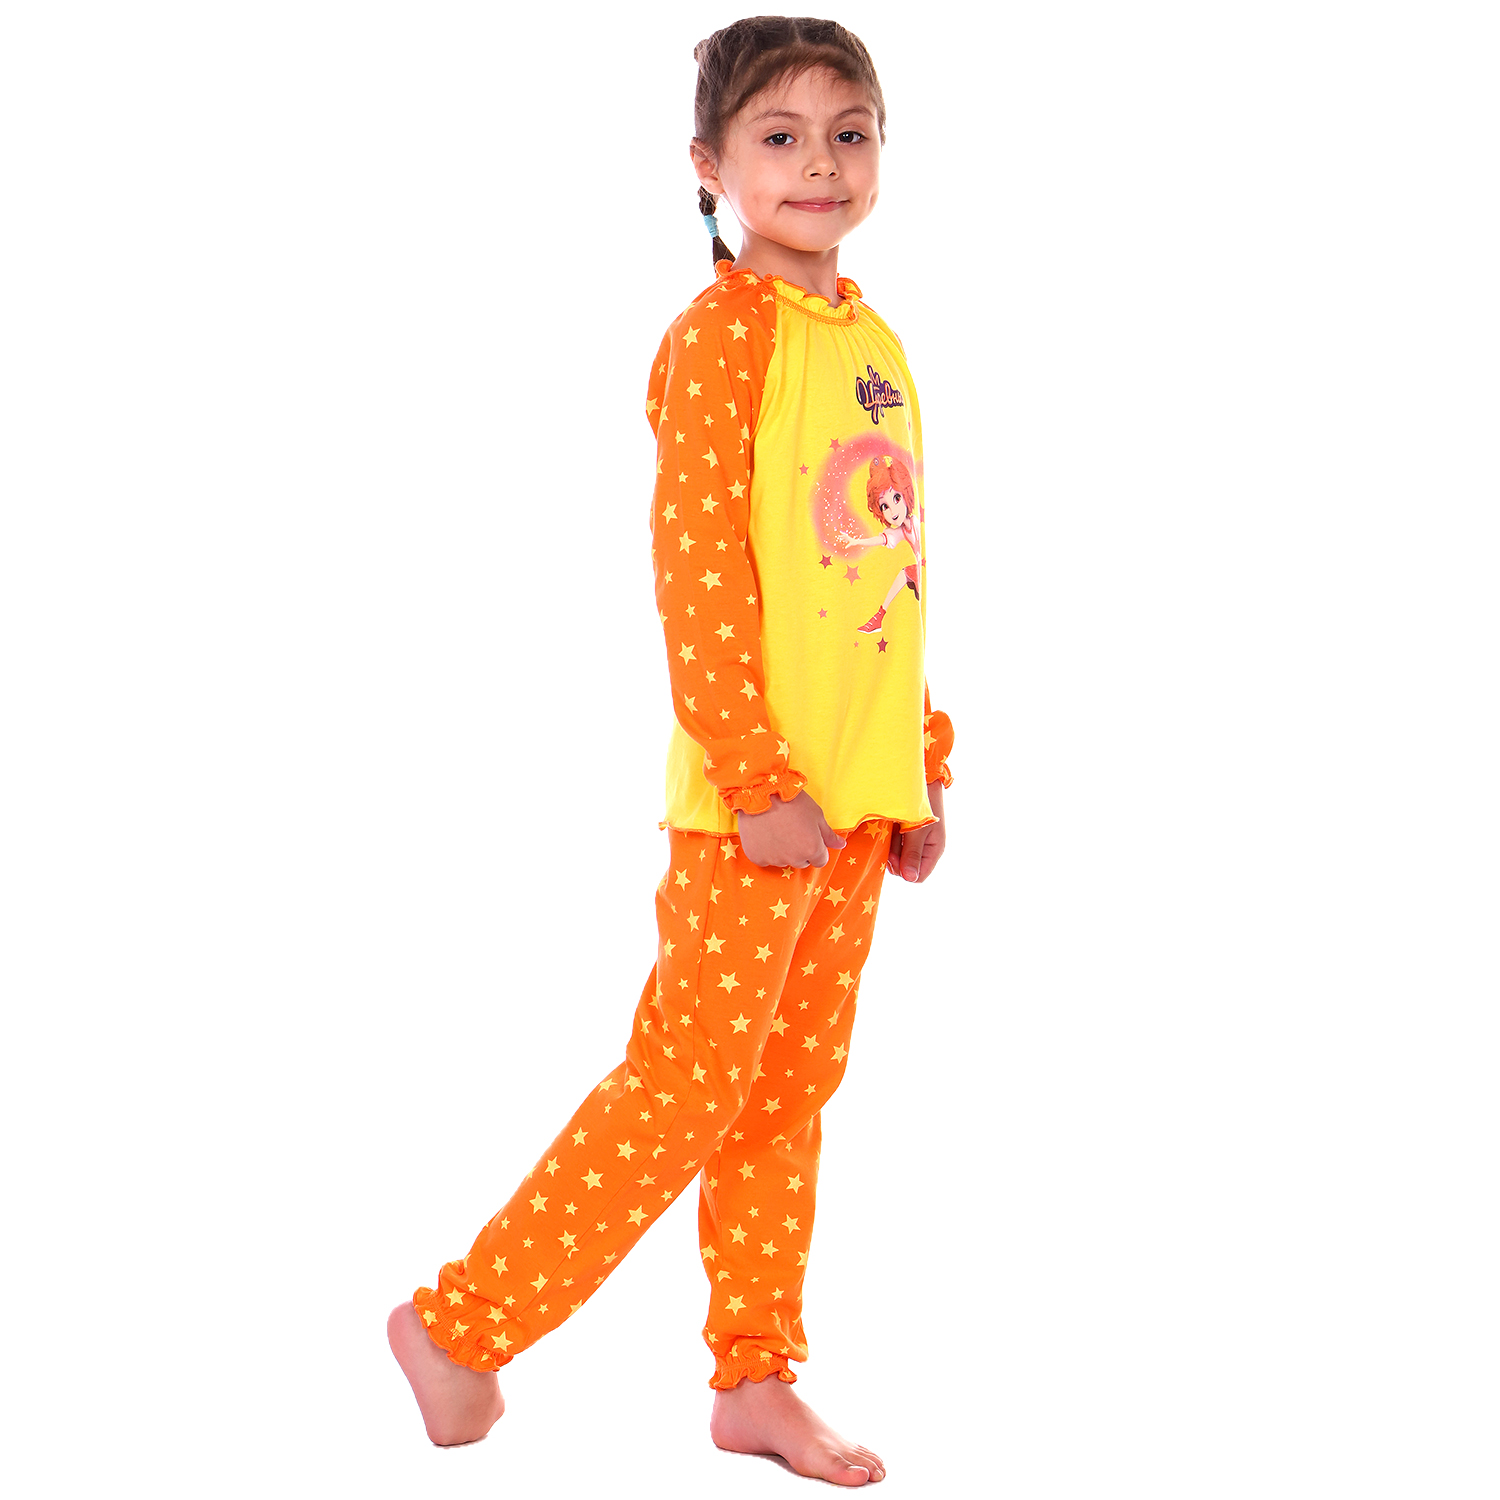 Пижама Детская Одежда S0413К/желтый_оранж - фото 5